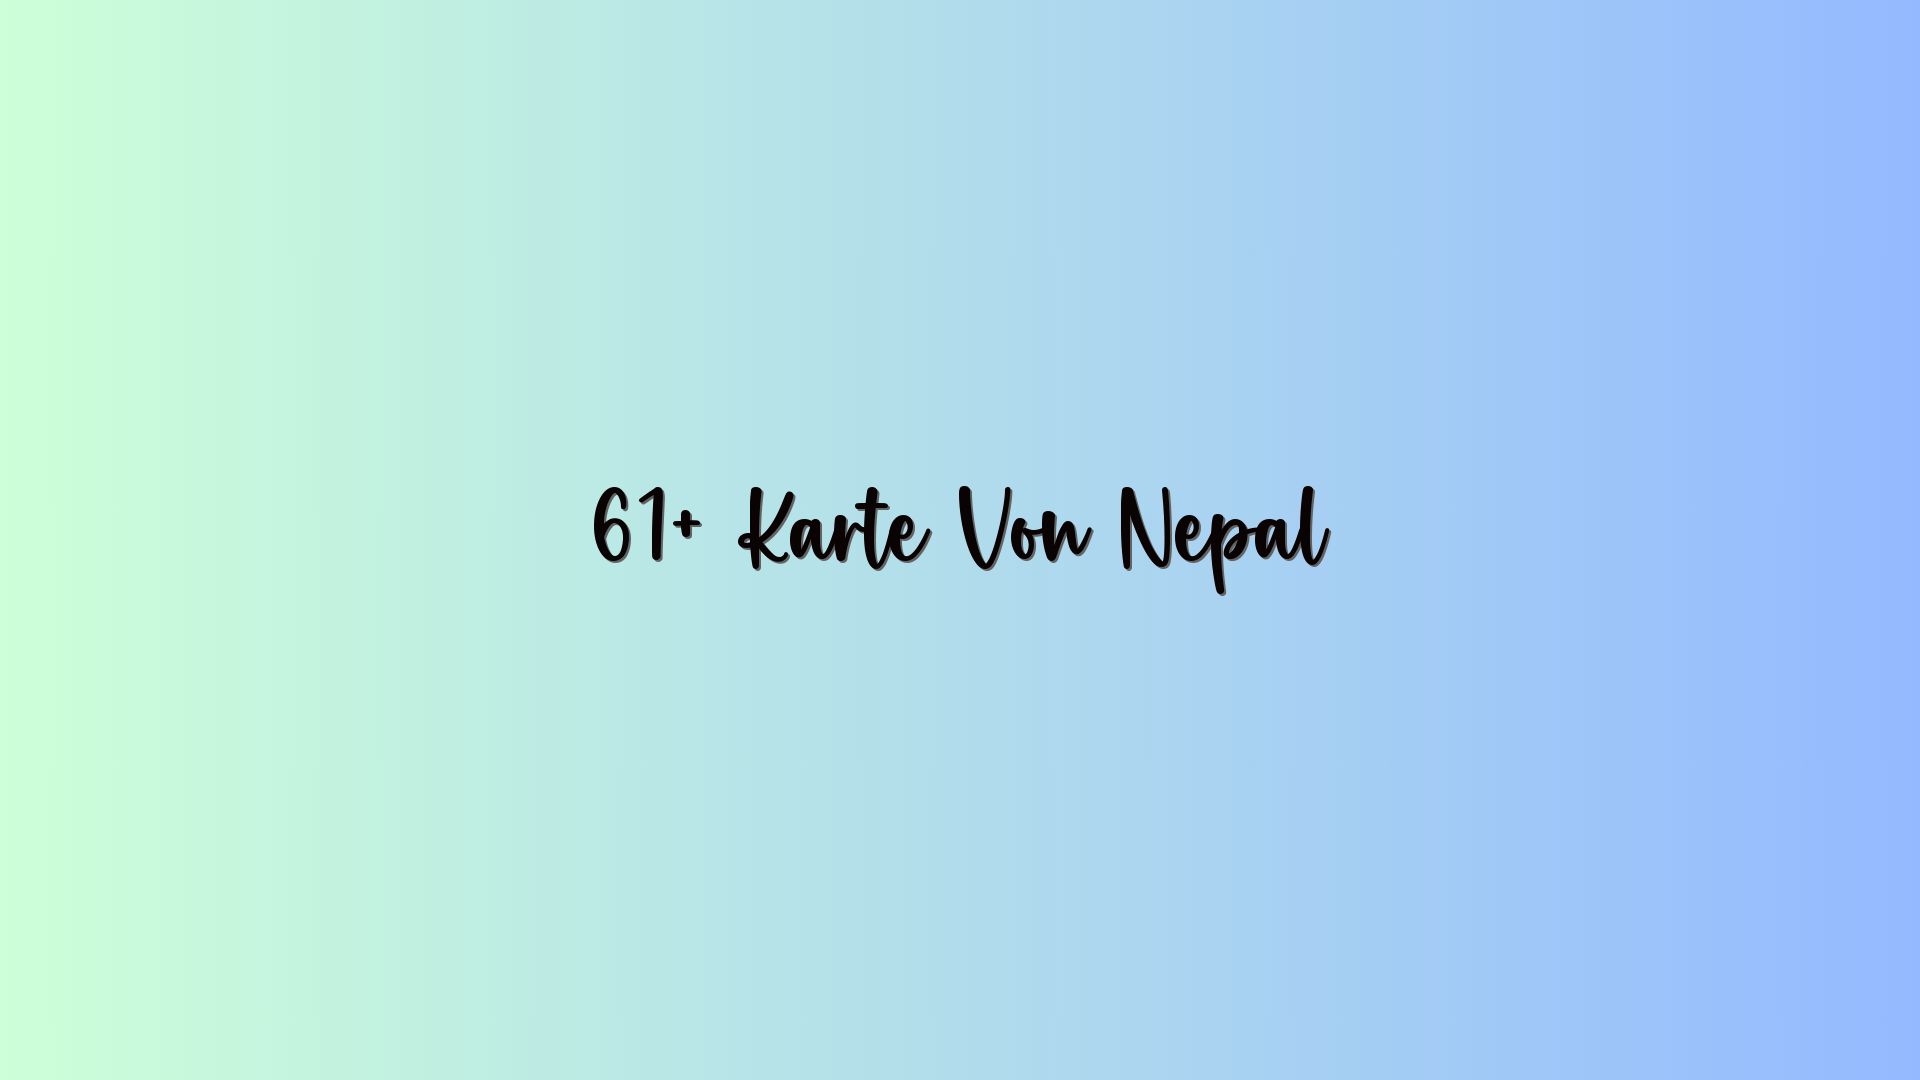 61+ Karte Von Nepal